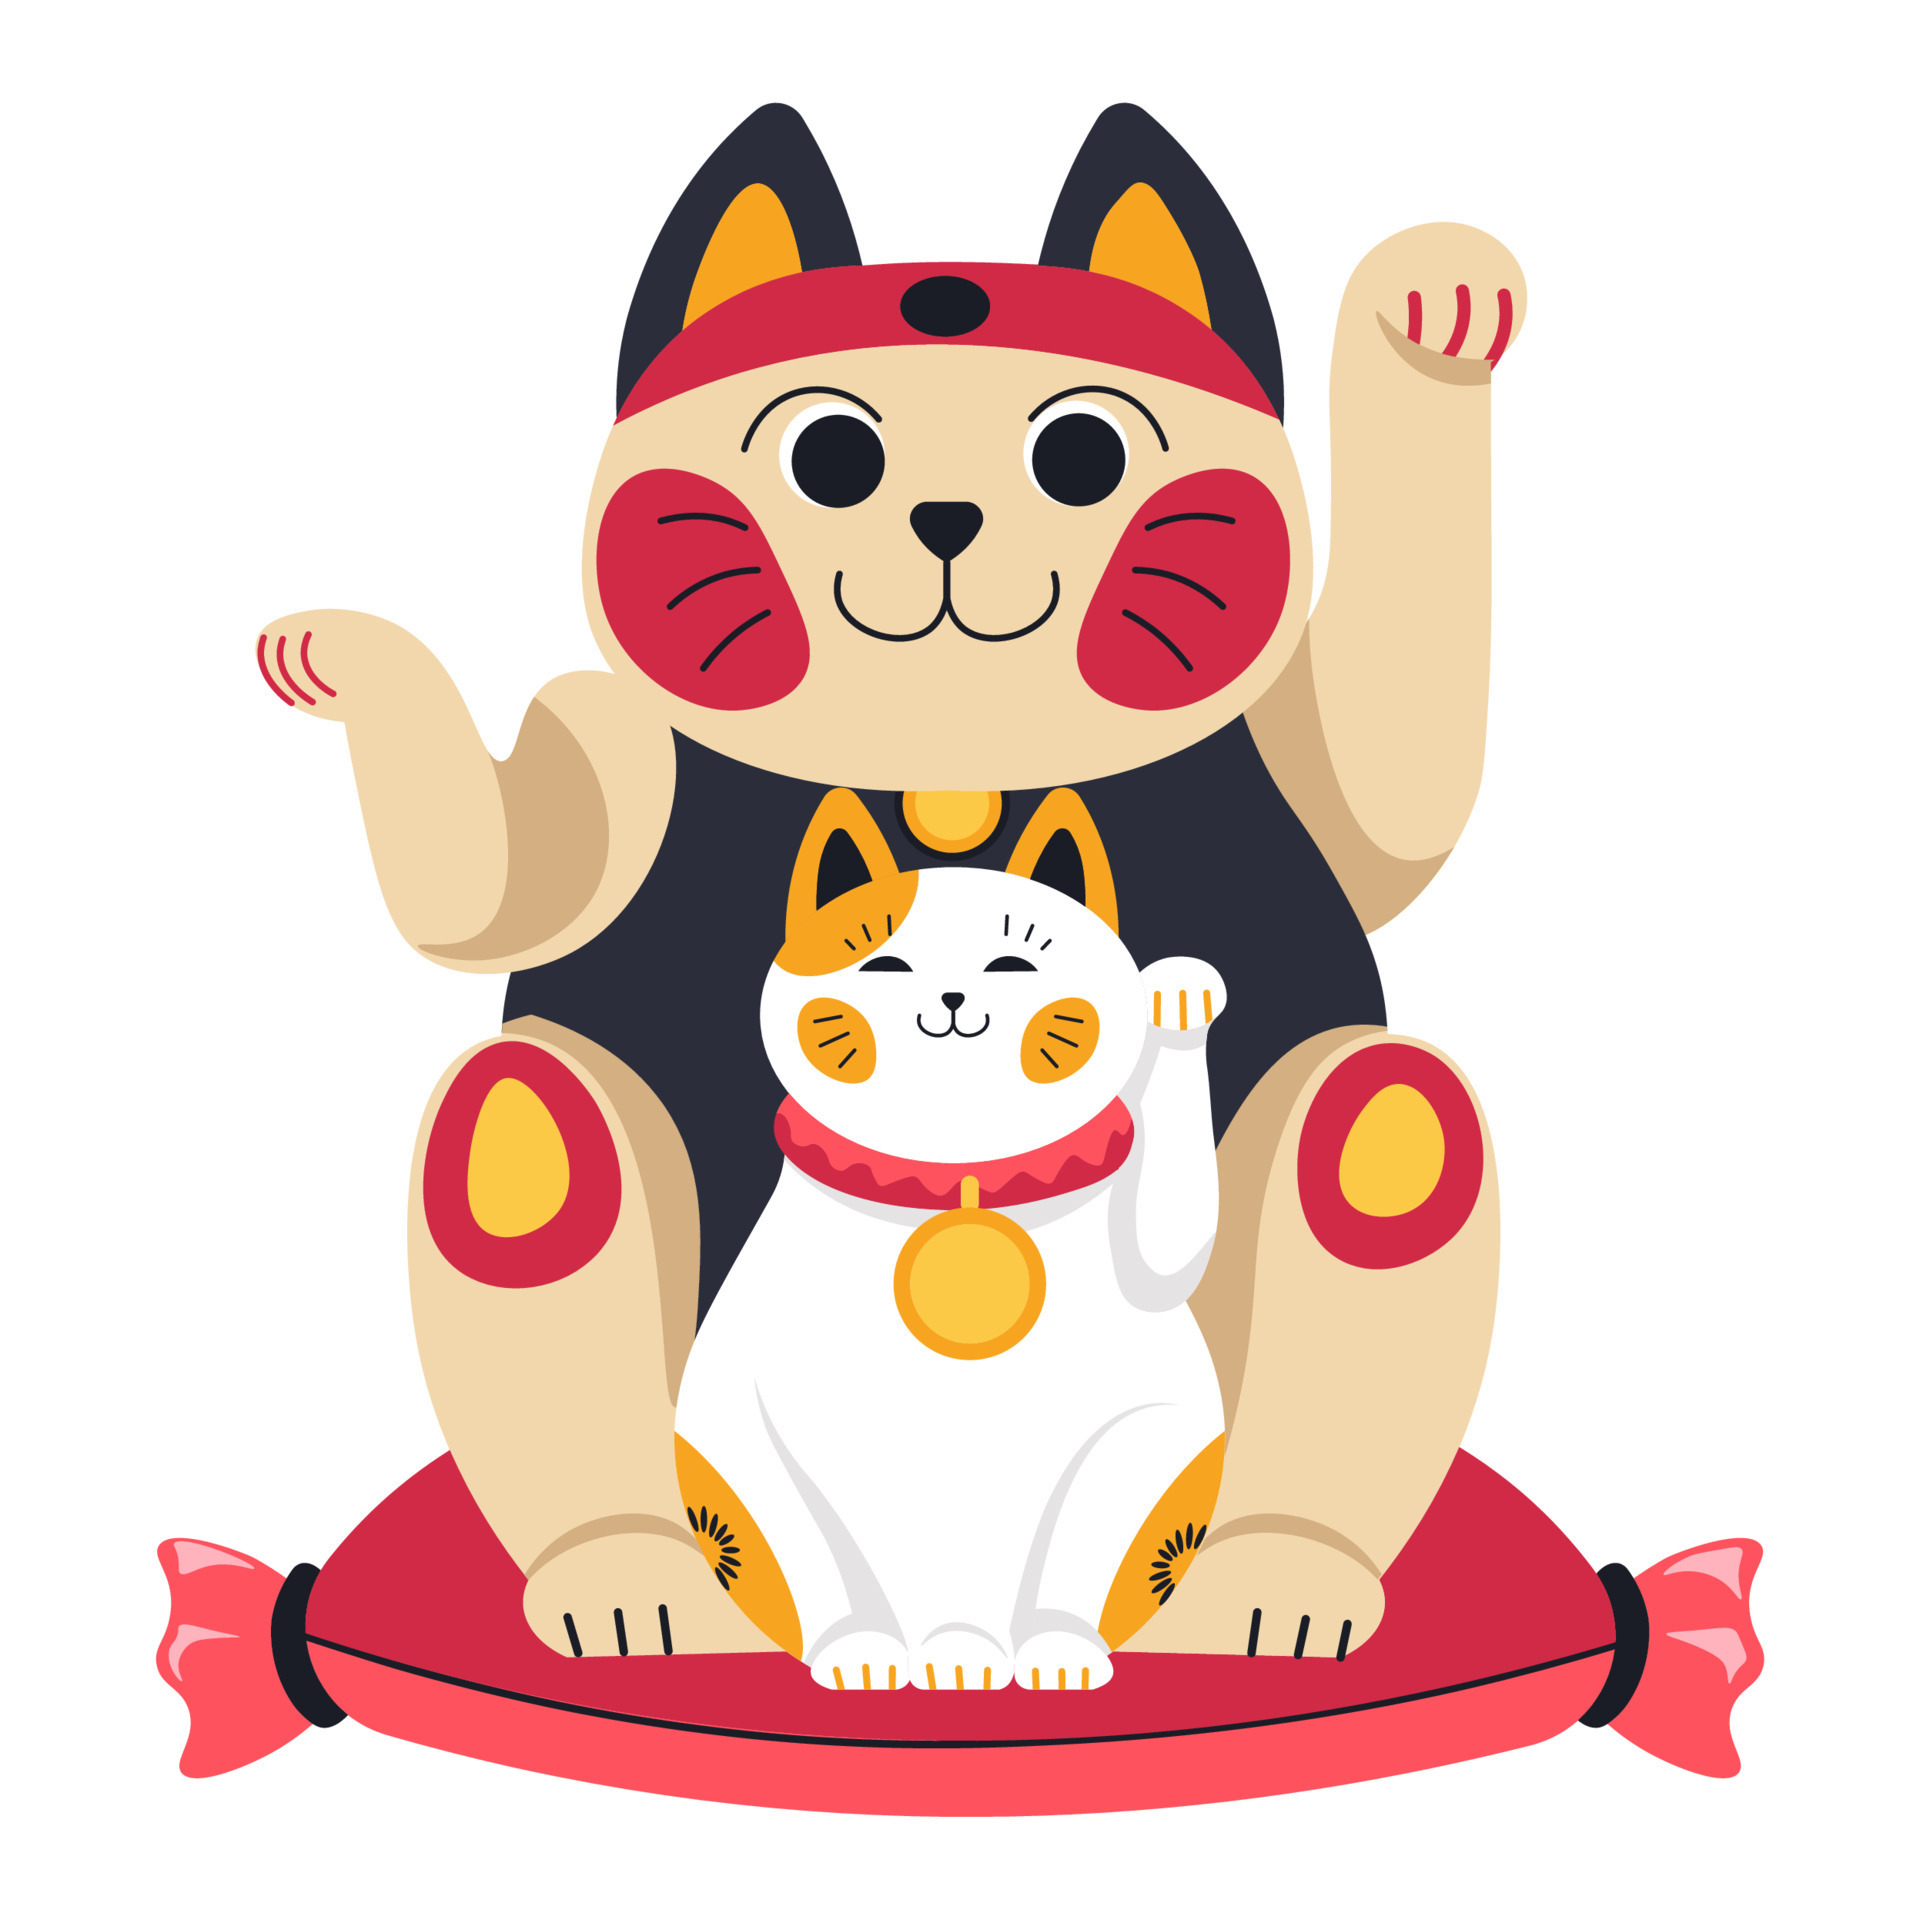 herhaling Vervallen Aantrekkelijk zijn aantrekkelijk Japans of Chinese katten symbool, dier beeldje 19498860 - Download Free  Vectors, Vector Bestanden, Ontwerpen Templates